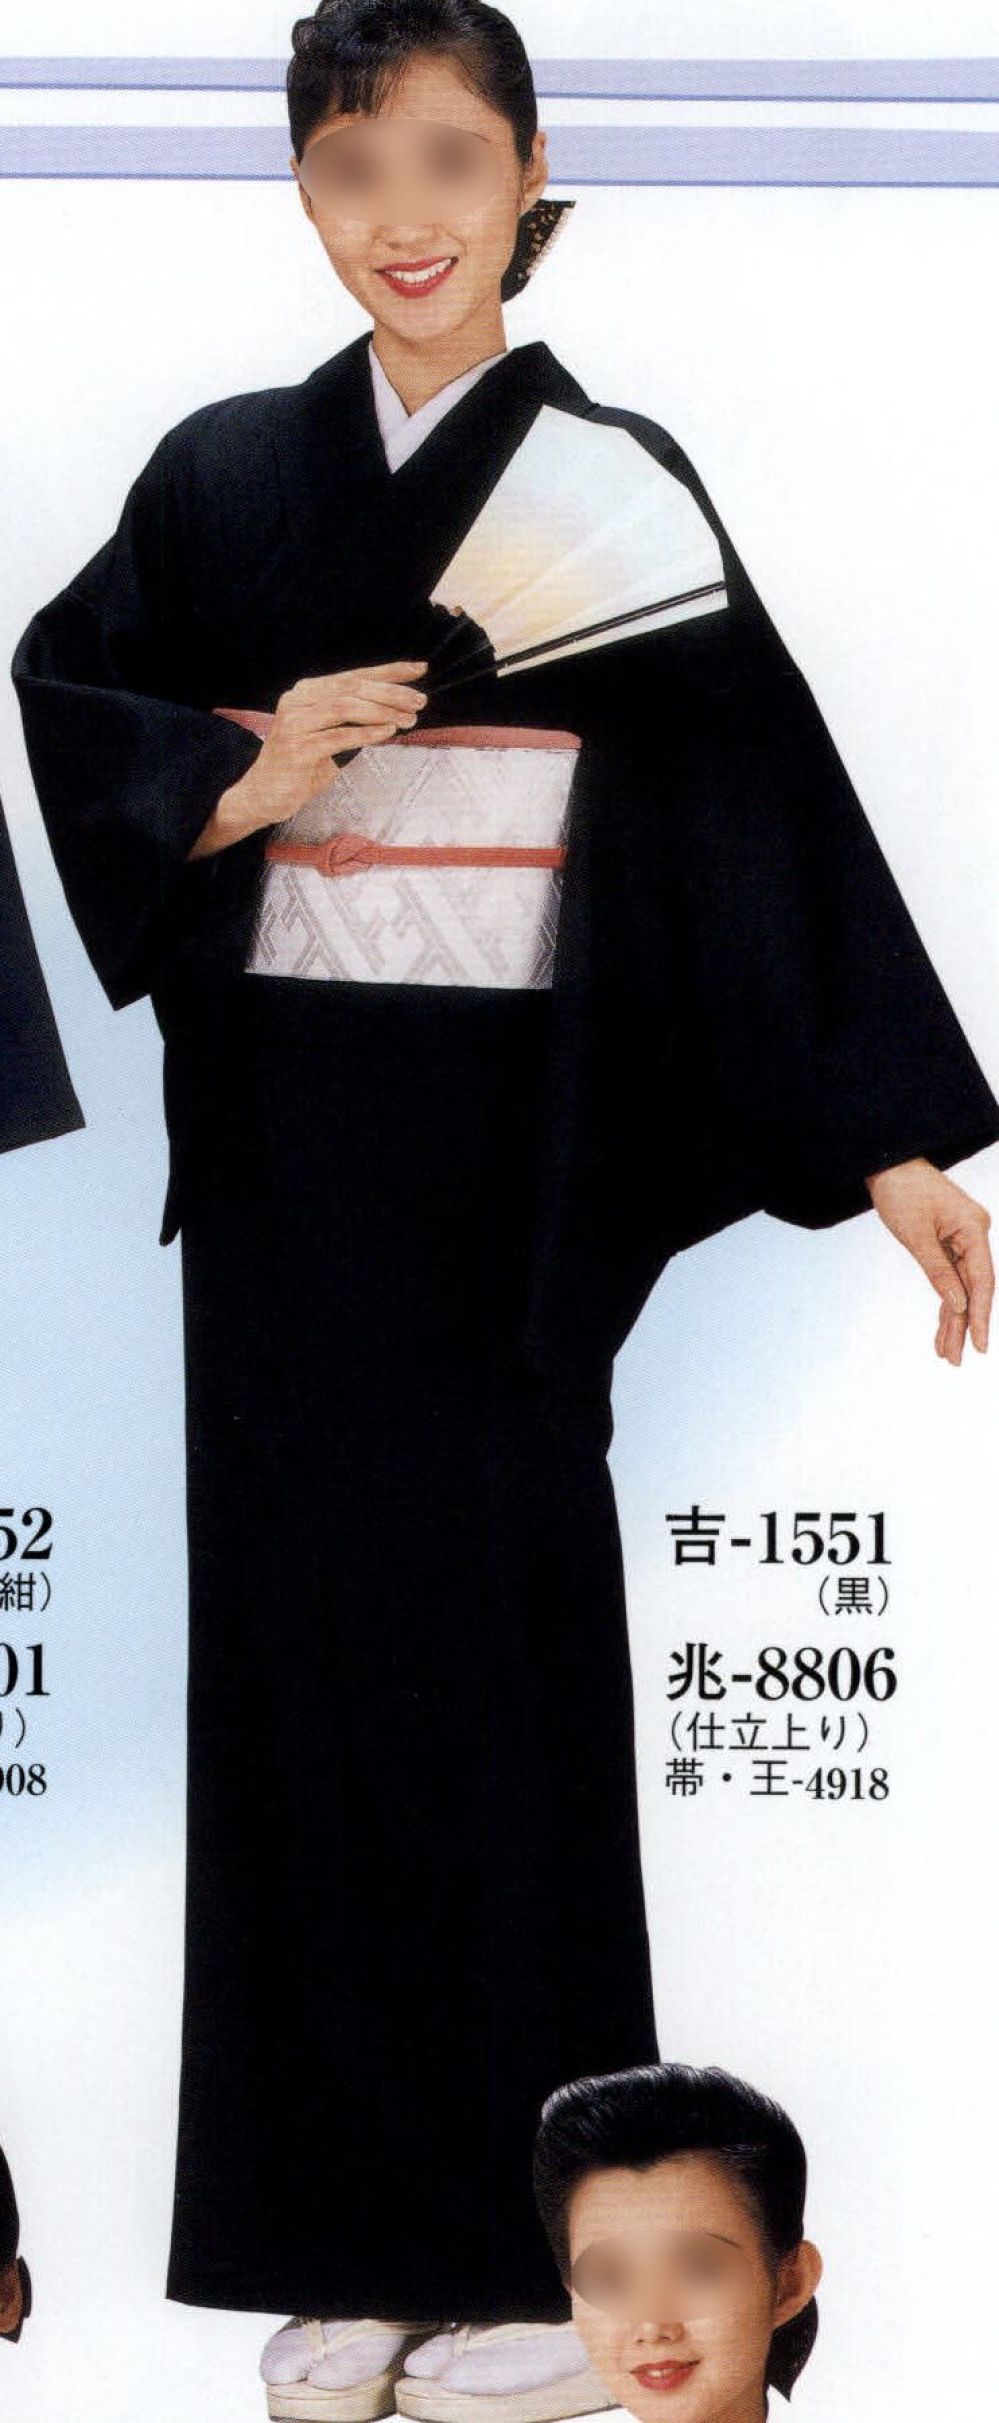 レディース 仕立上り着物 兆印（単衣仕立） 8804 日本の歳時記 :MT1-8804:ユニフォーム1 !店 通販 コード